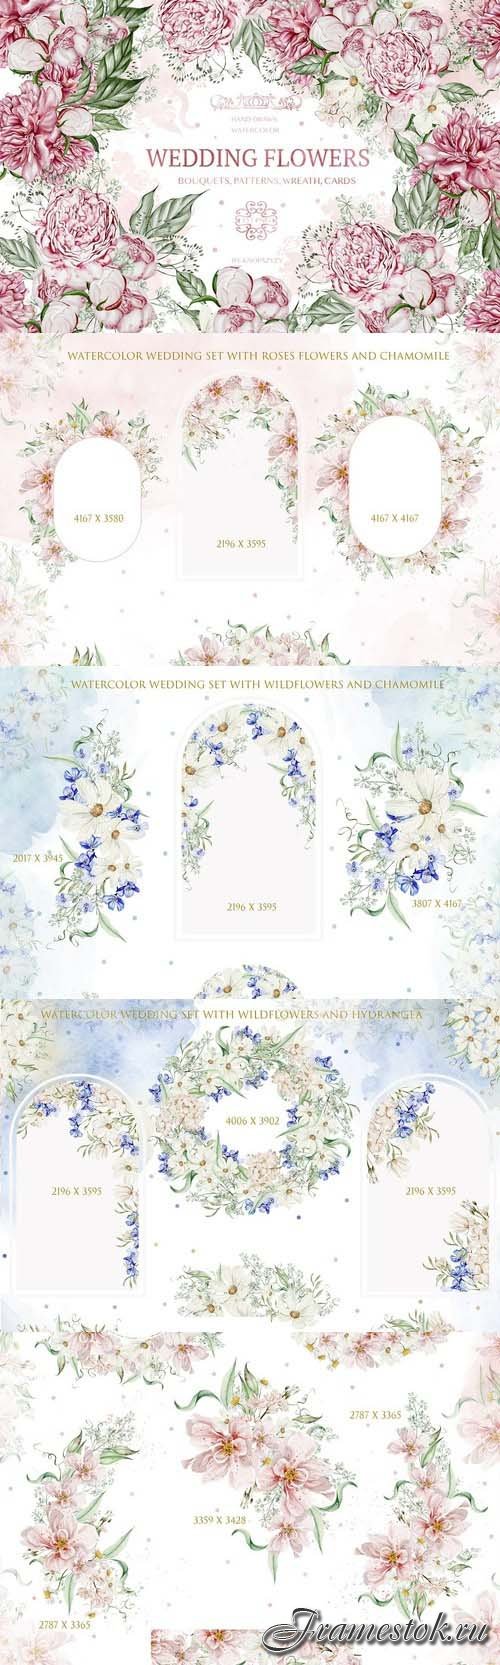 Watercolor Wedding Flowers